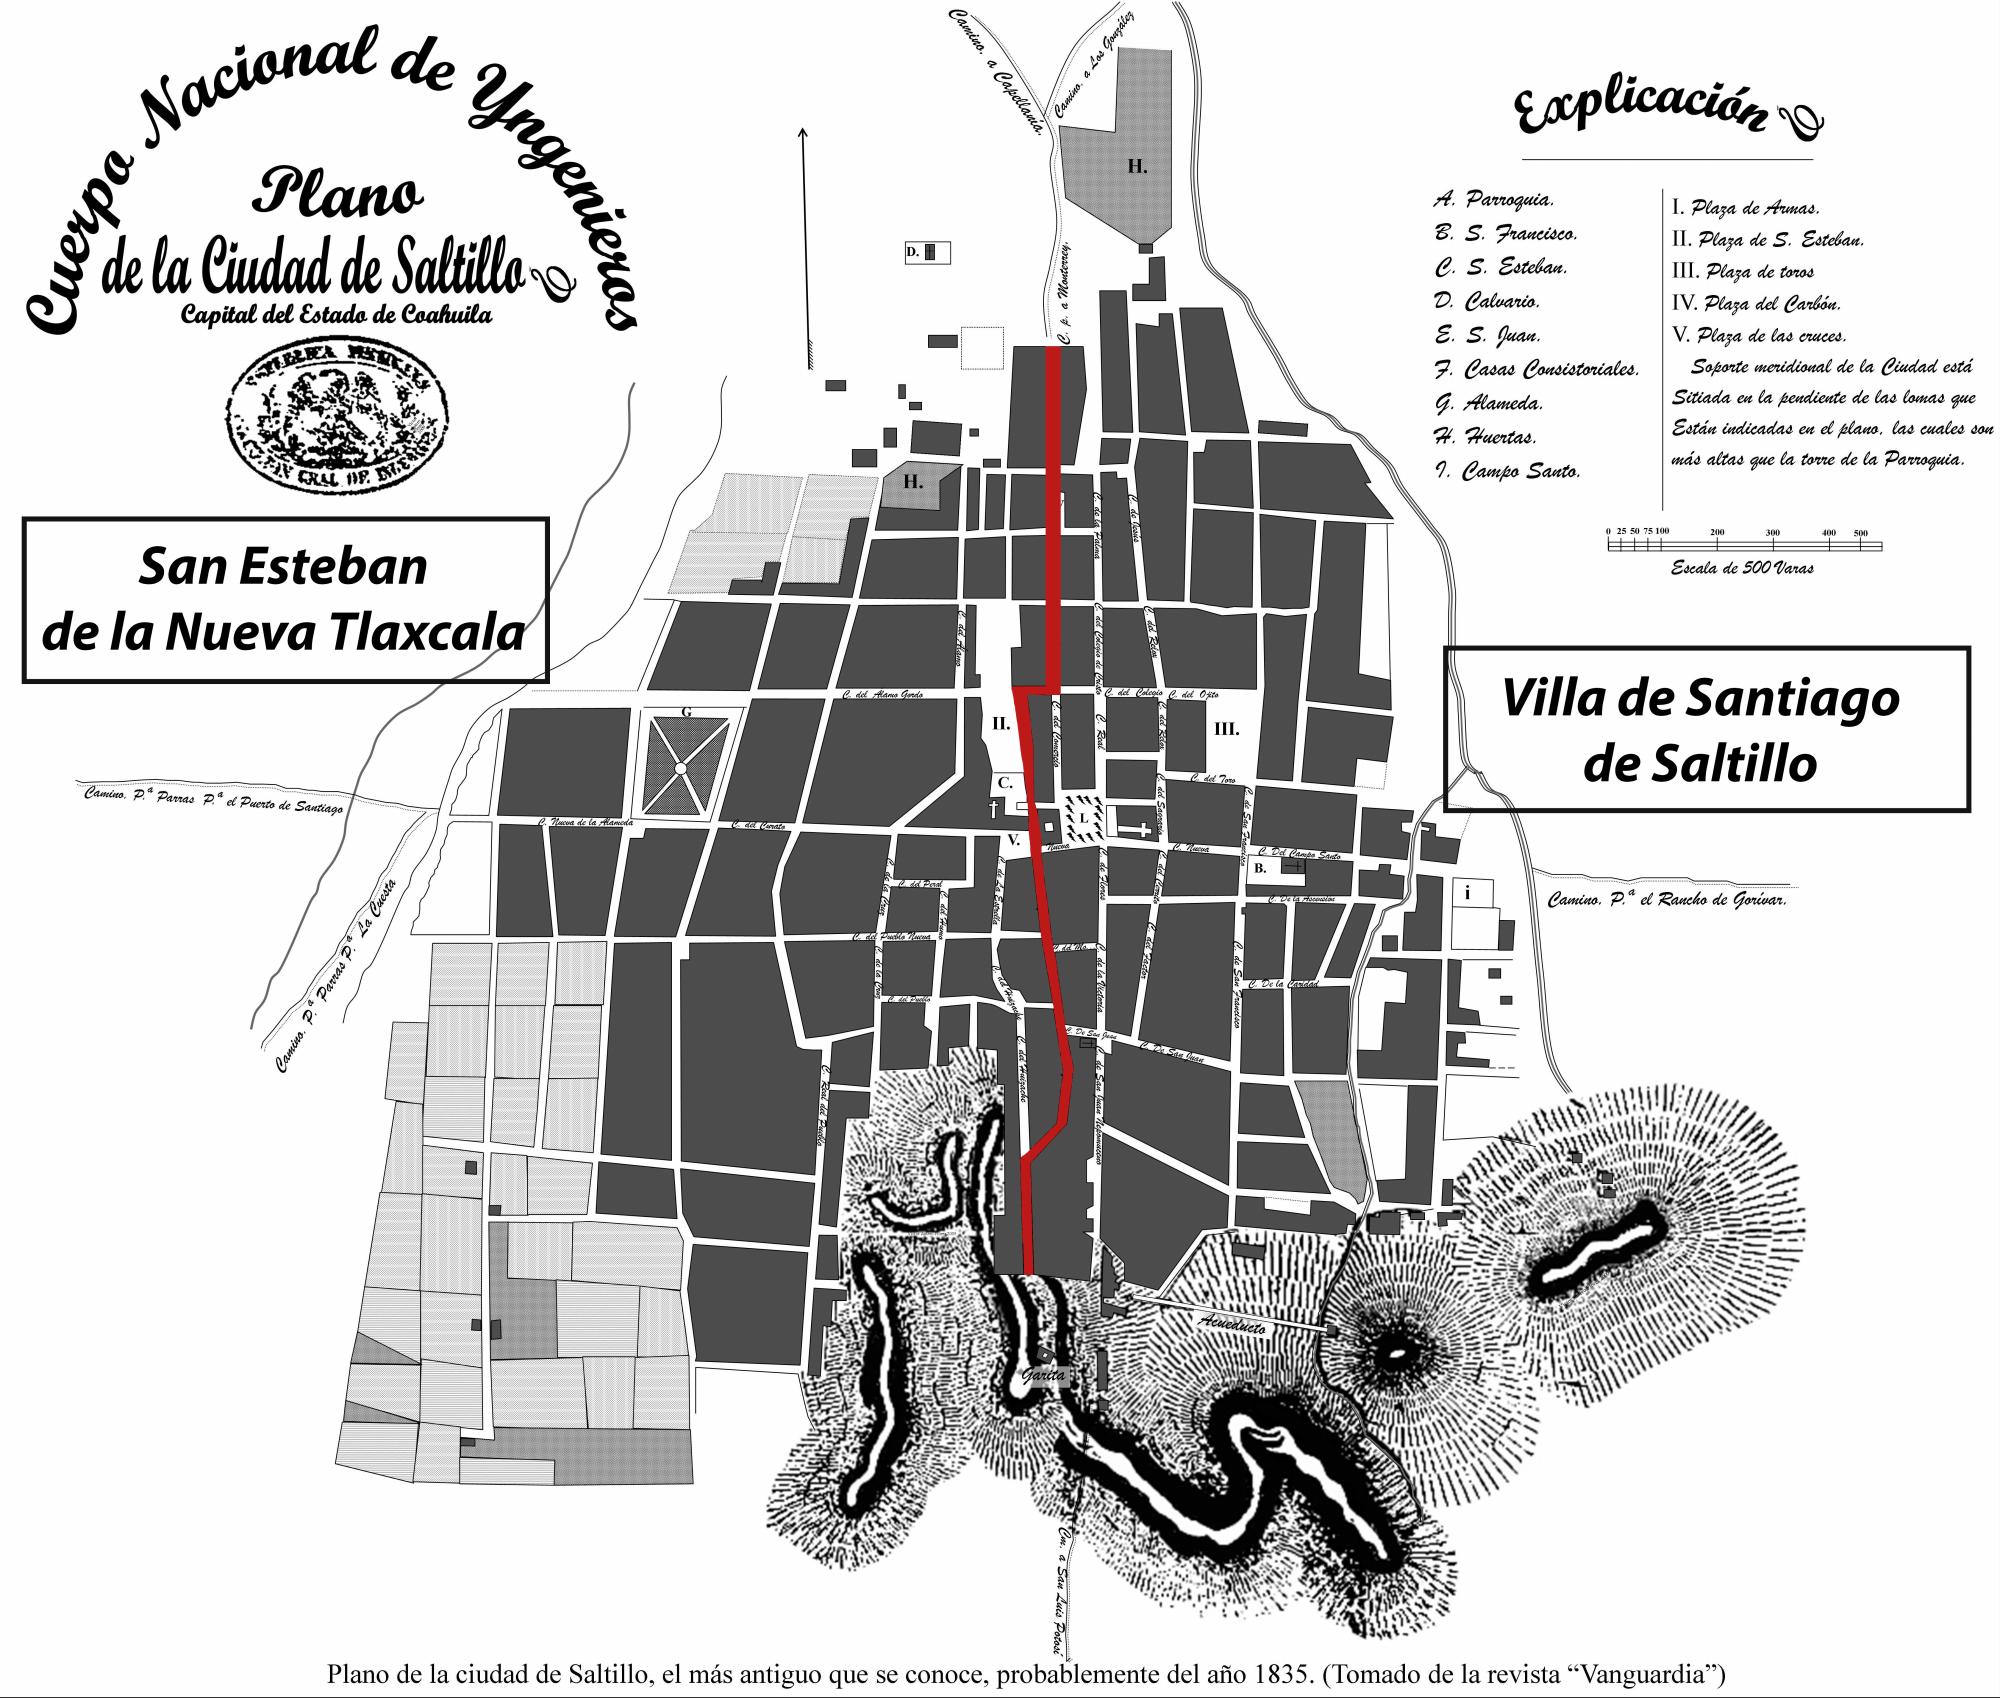 $!Primer plano de la ciudad de Saltillo, data de 1835. Se marca con línea roja la división de los pueblos, aunque para esa fecha ya se habían fusionado